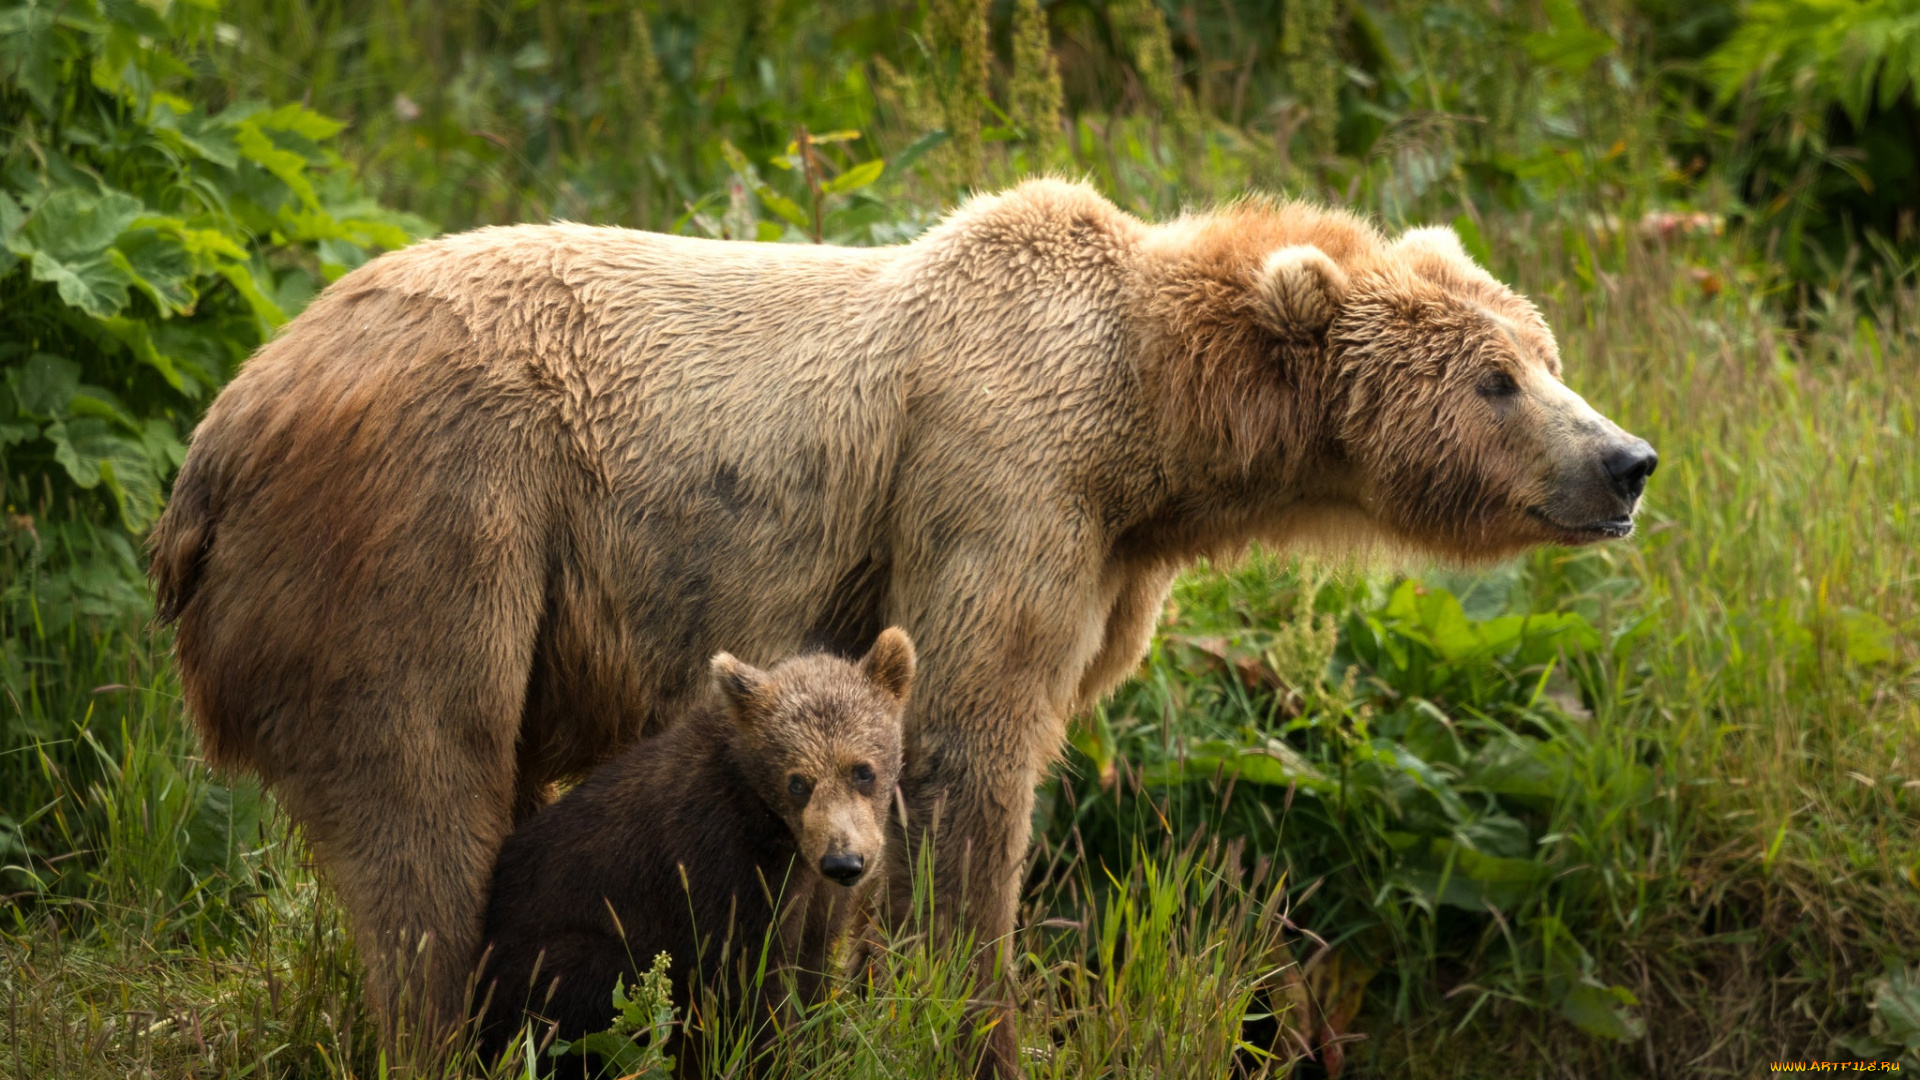 животные, медведи, морды, два, парочка, медведица, дитя, материнство, мать, медведя, бурые, зелень, медвежонок, пара, поза, природа, листья, медведь, малыш, лето, взгляд, трава